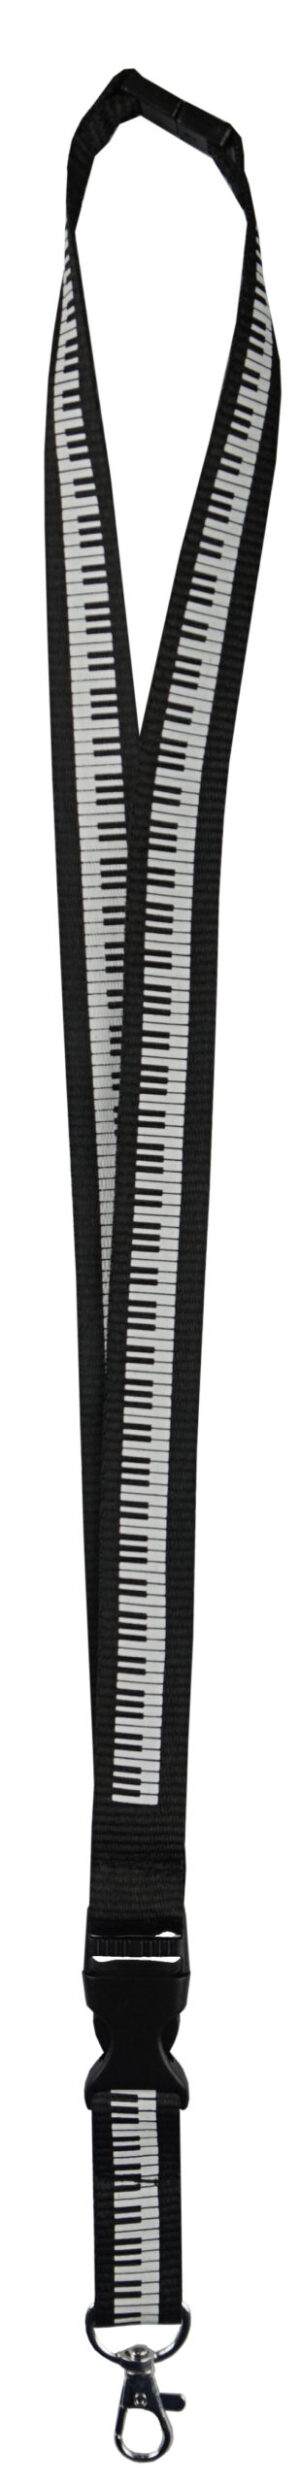 Entdecken Sie unsere exklusiven Baumwoll-Neckbänder in elegantem Schwarz mit dem aufgedruckten Design einer Klaviertastatur! Diese hochwertigen Lanyards sind nicht nur praktisch, sondern auch ein stilvolles Accessoire für Musikliebhaber und Pianisten.Jedes Neckband wird aus hochwertiger Baumwolle gefertigt und ist mit einer präzisen Darstellung einer Klaviertastatur verziert. Das schwarze Design mit den weißen Klaviertasten verleiht dem Lanyard eine edle Note und passt perfekt zu jedem Outfit.Die robuste Baumwollkonstruktion sorgt für Langlebigkeit und angenehmen Tragekomfort den ganzen Tag über. Die weiche Textur der Baumwolle liegt sanft auf der Haut und verhindert Reizungen, während Sie Ihre Ausweise, Schlüssel oder andere Gegenstände sicher bei sich tragen.Unsere Neckbänder sind mit einer Länge von 50 cm universell einsetzbar und bieten eine bequeme Passform für verschiedene Anlässe - ob im Büro, auf Konzerten oder Veranstaltungen - diese Lanyards sind der ideale Begleiter für alle Musikliebhaber